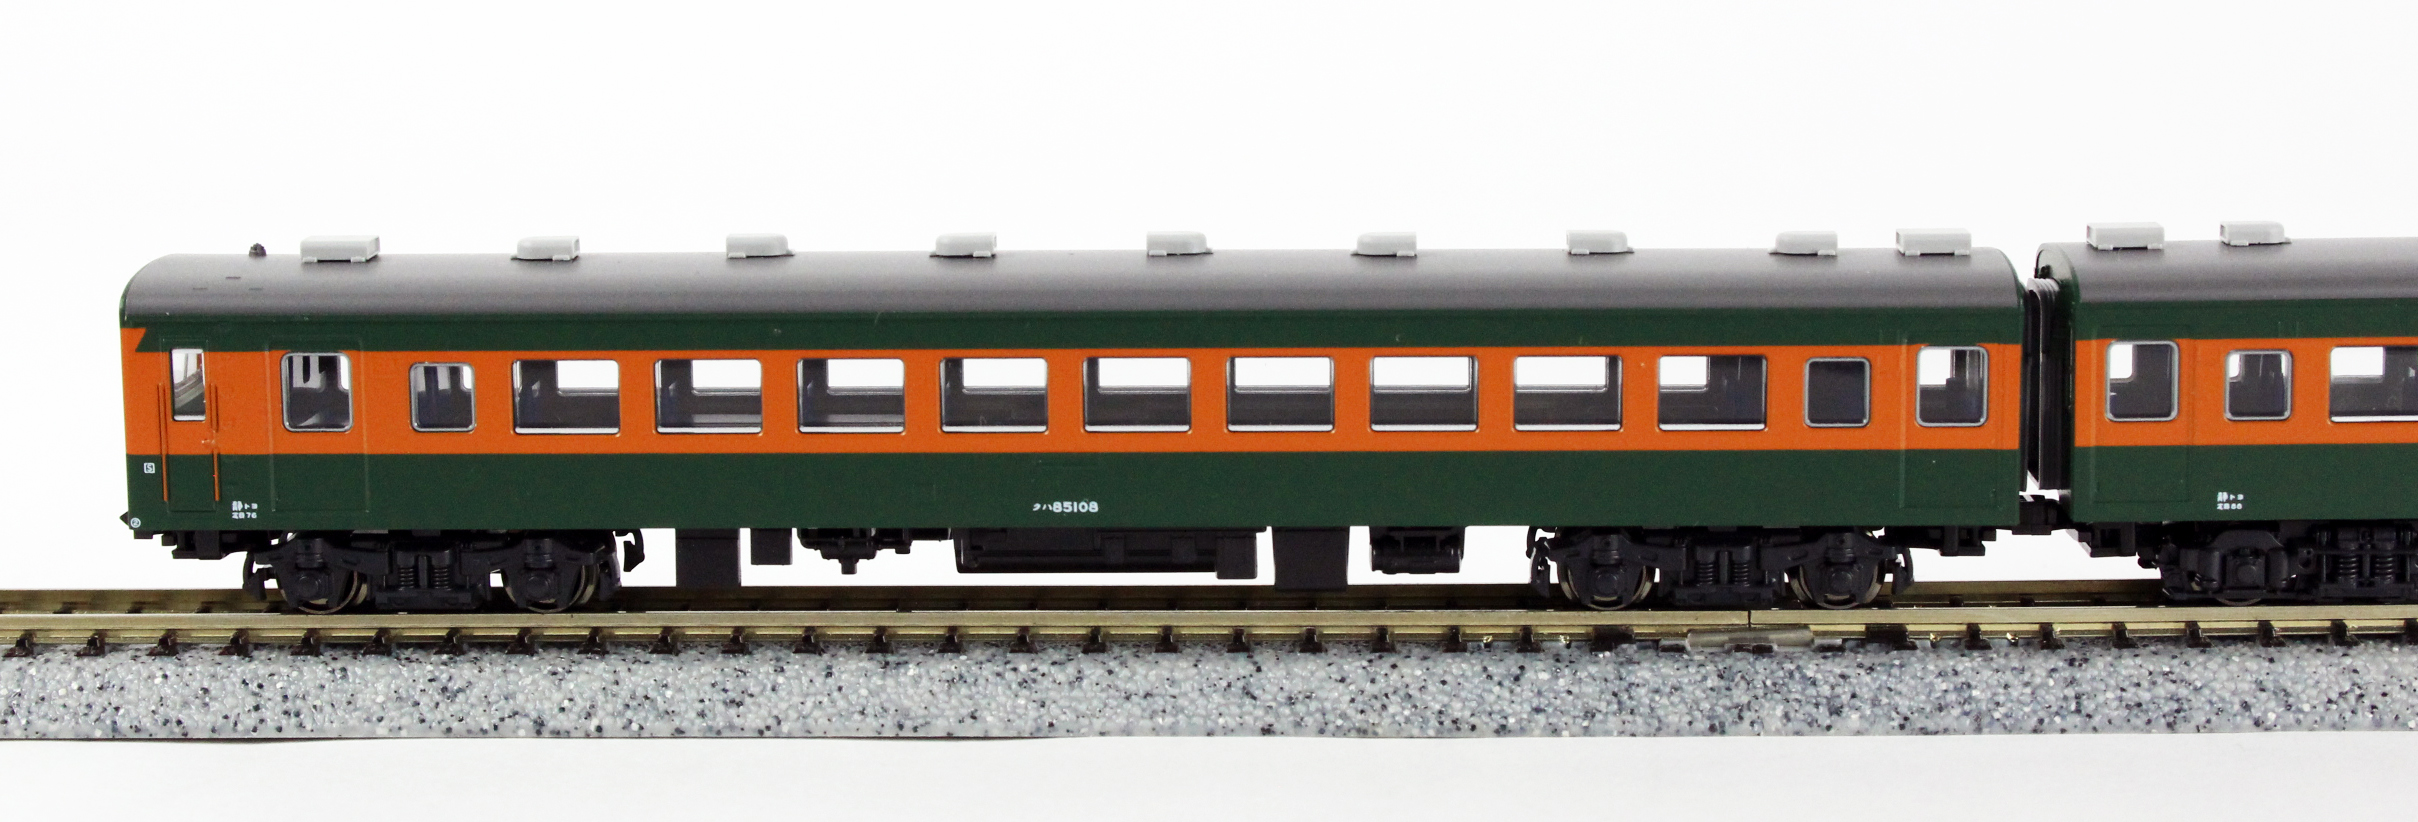 KATO 10-1385 80系300番台 飯田線 6両セット 鉄道模型 Nゲージ | 鉄道